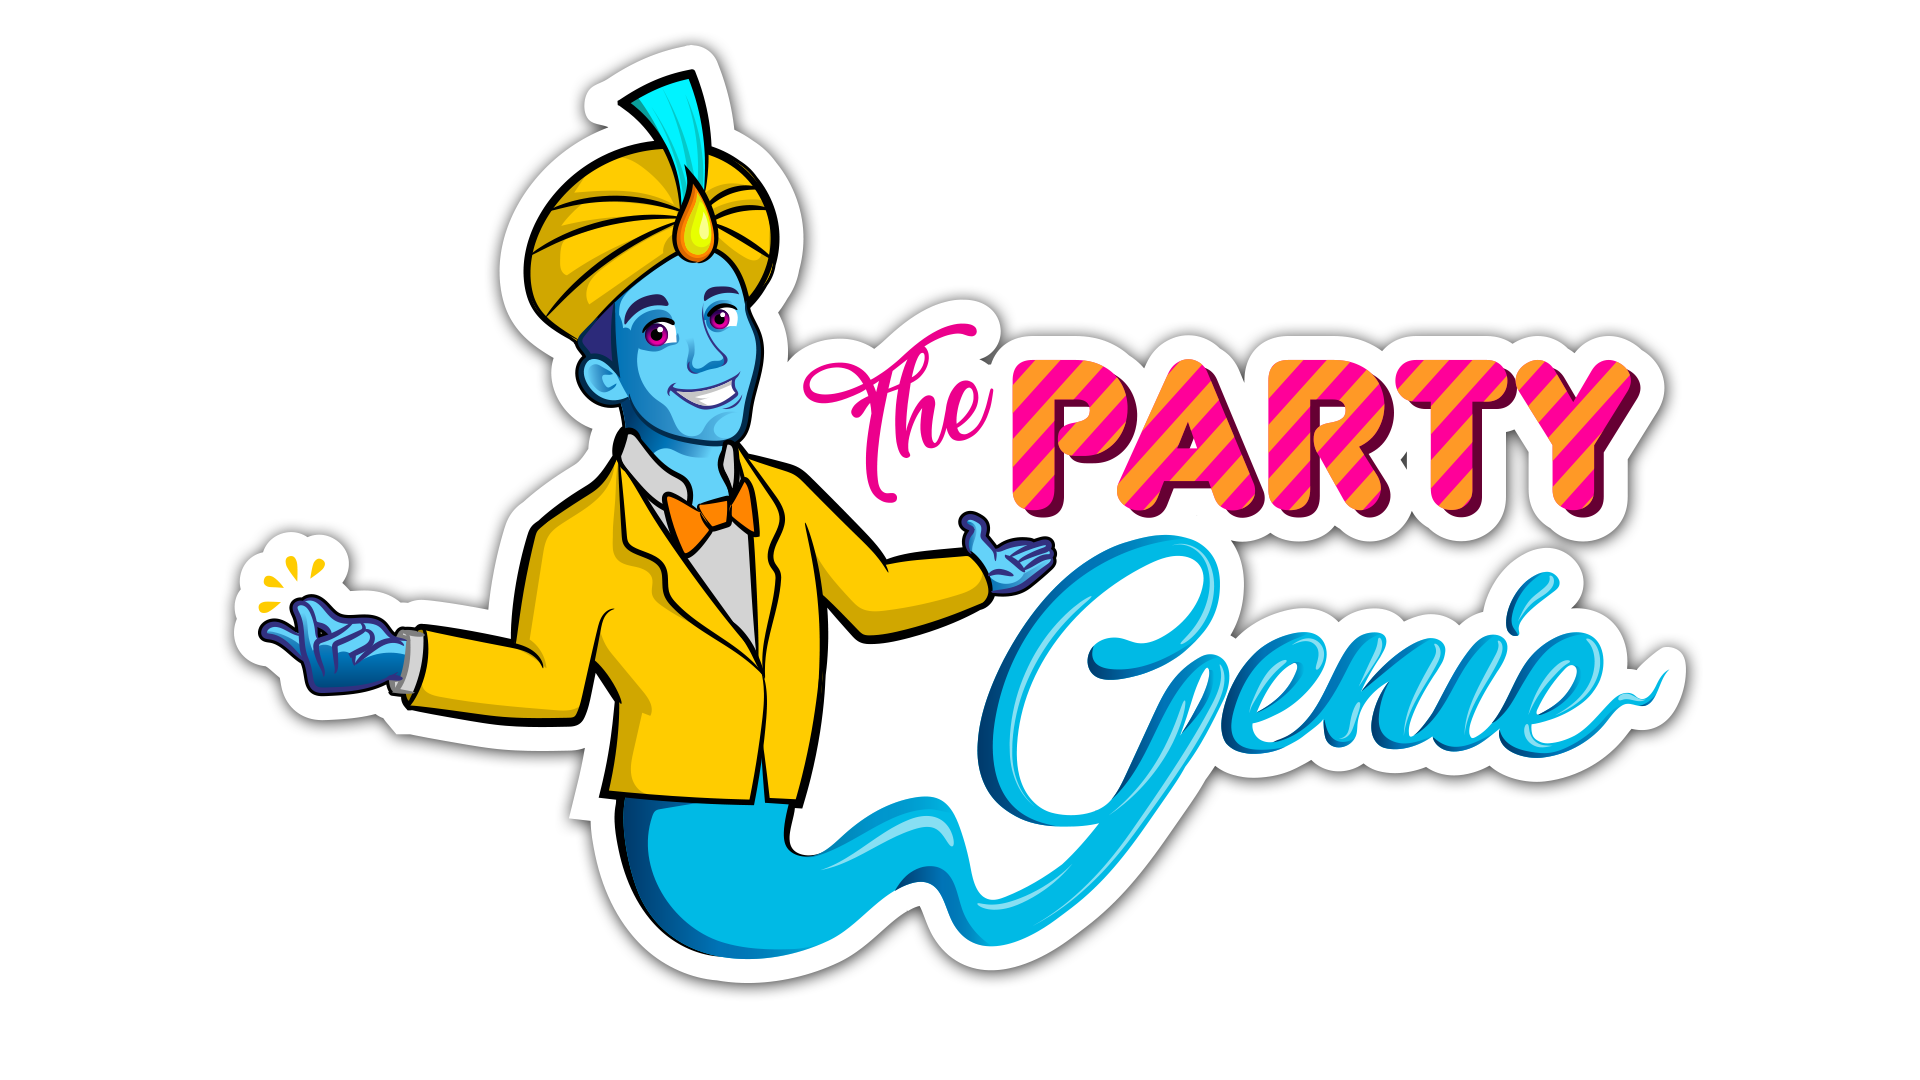 Party genie